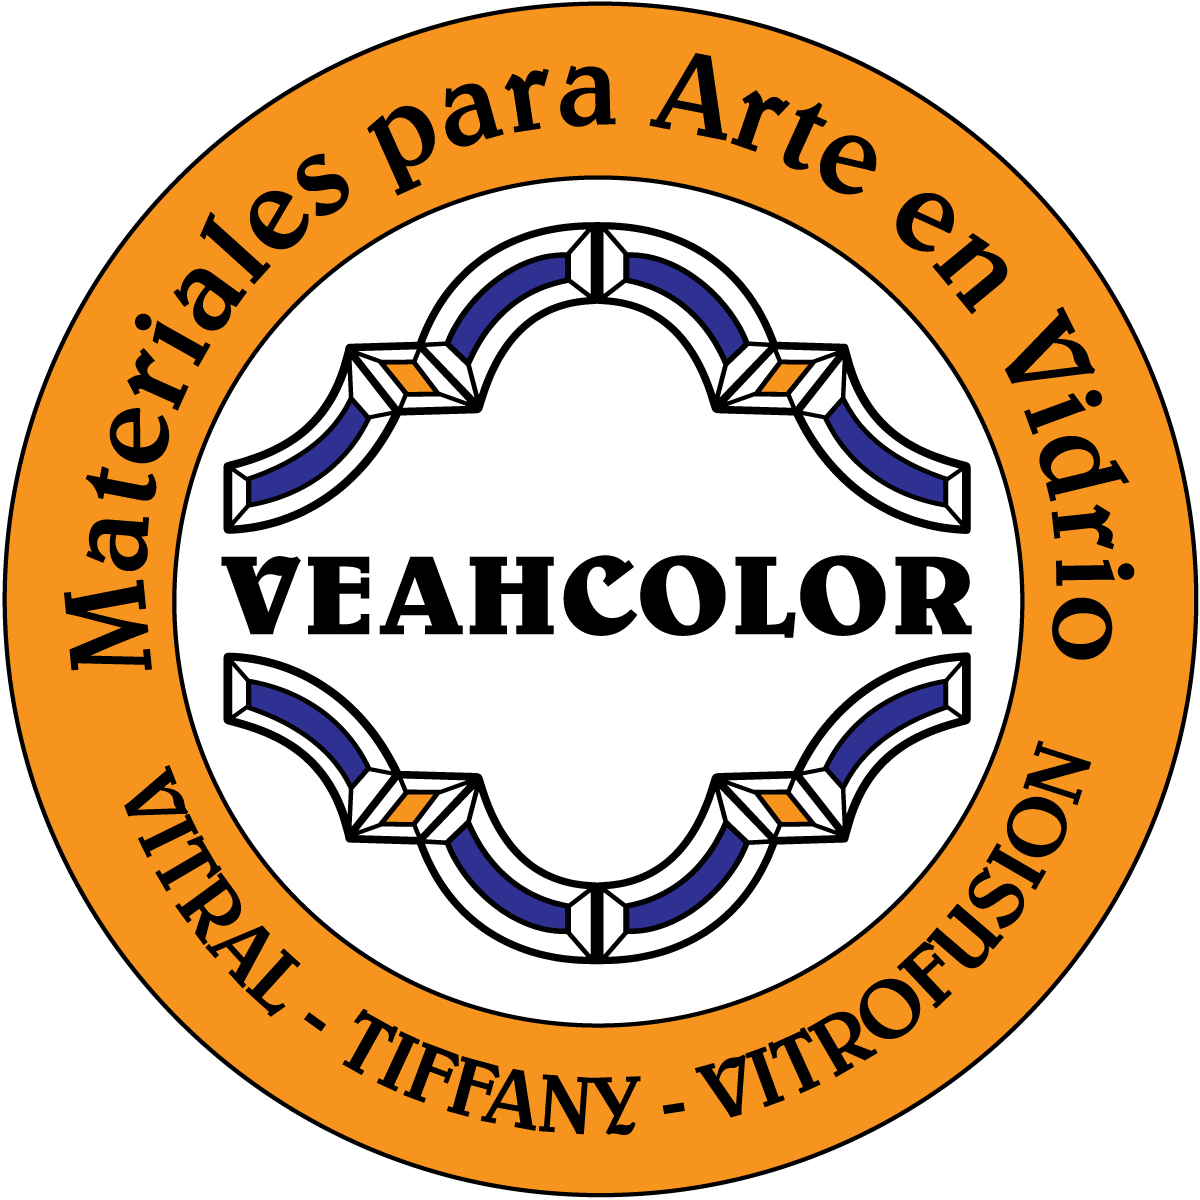 VEAHCOLOR - Materiales para Arte en Vidrio Sucursal Palermo: Bonpland 1115, Capital Federal - (011) 4854-2236. Sucursal San Miguel: Muñoz 1644, San Miguel, Buenos Aires - (011) 4667-2098. Pedidos: ventas@veahcolor.com.ar - (011) 4667-2098.